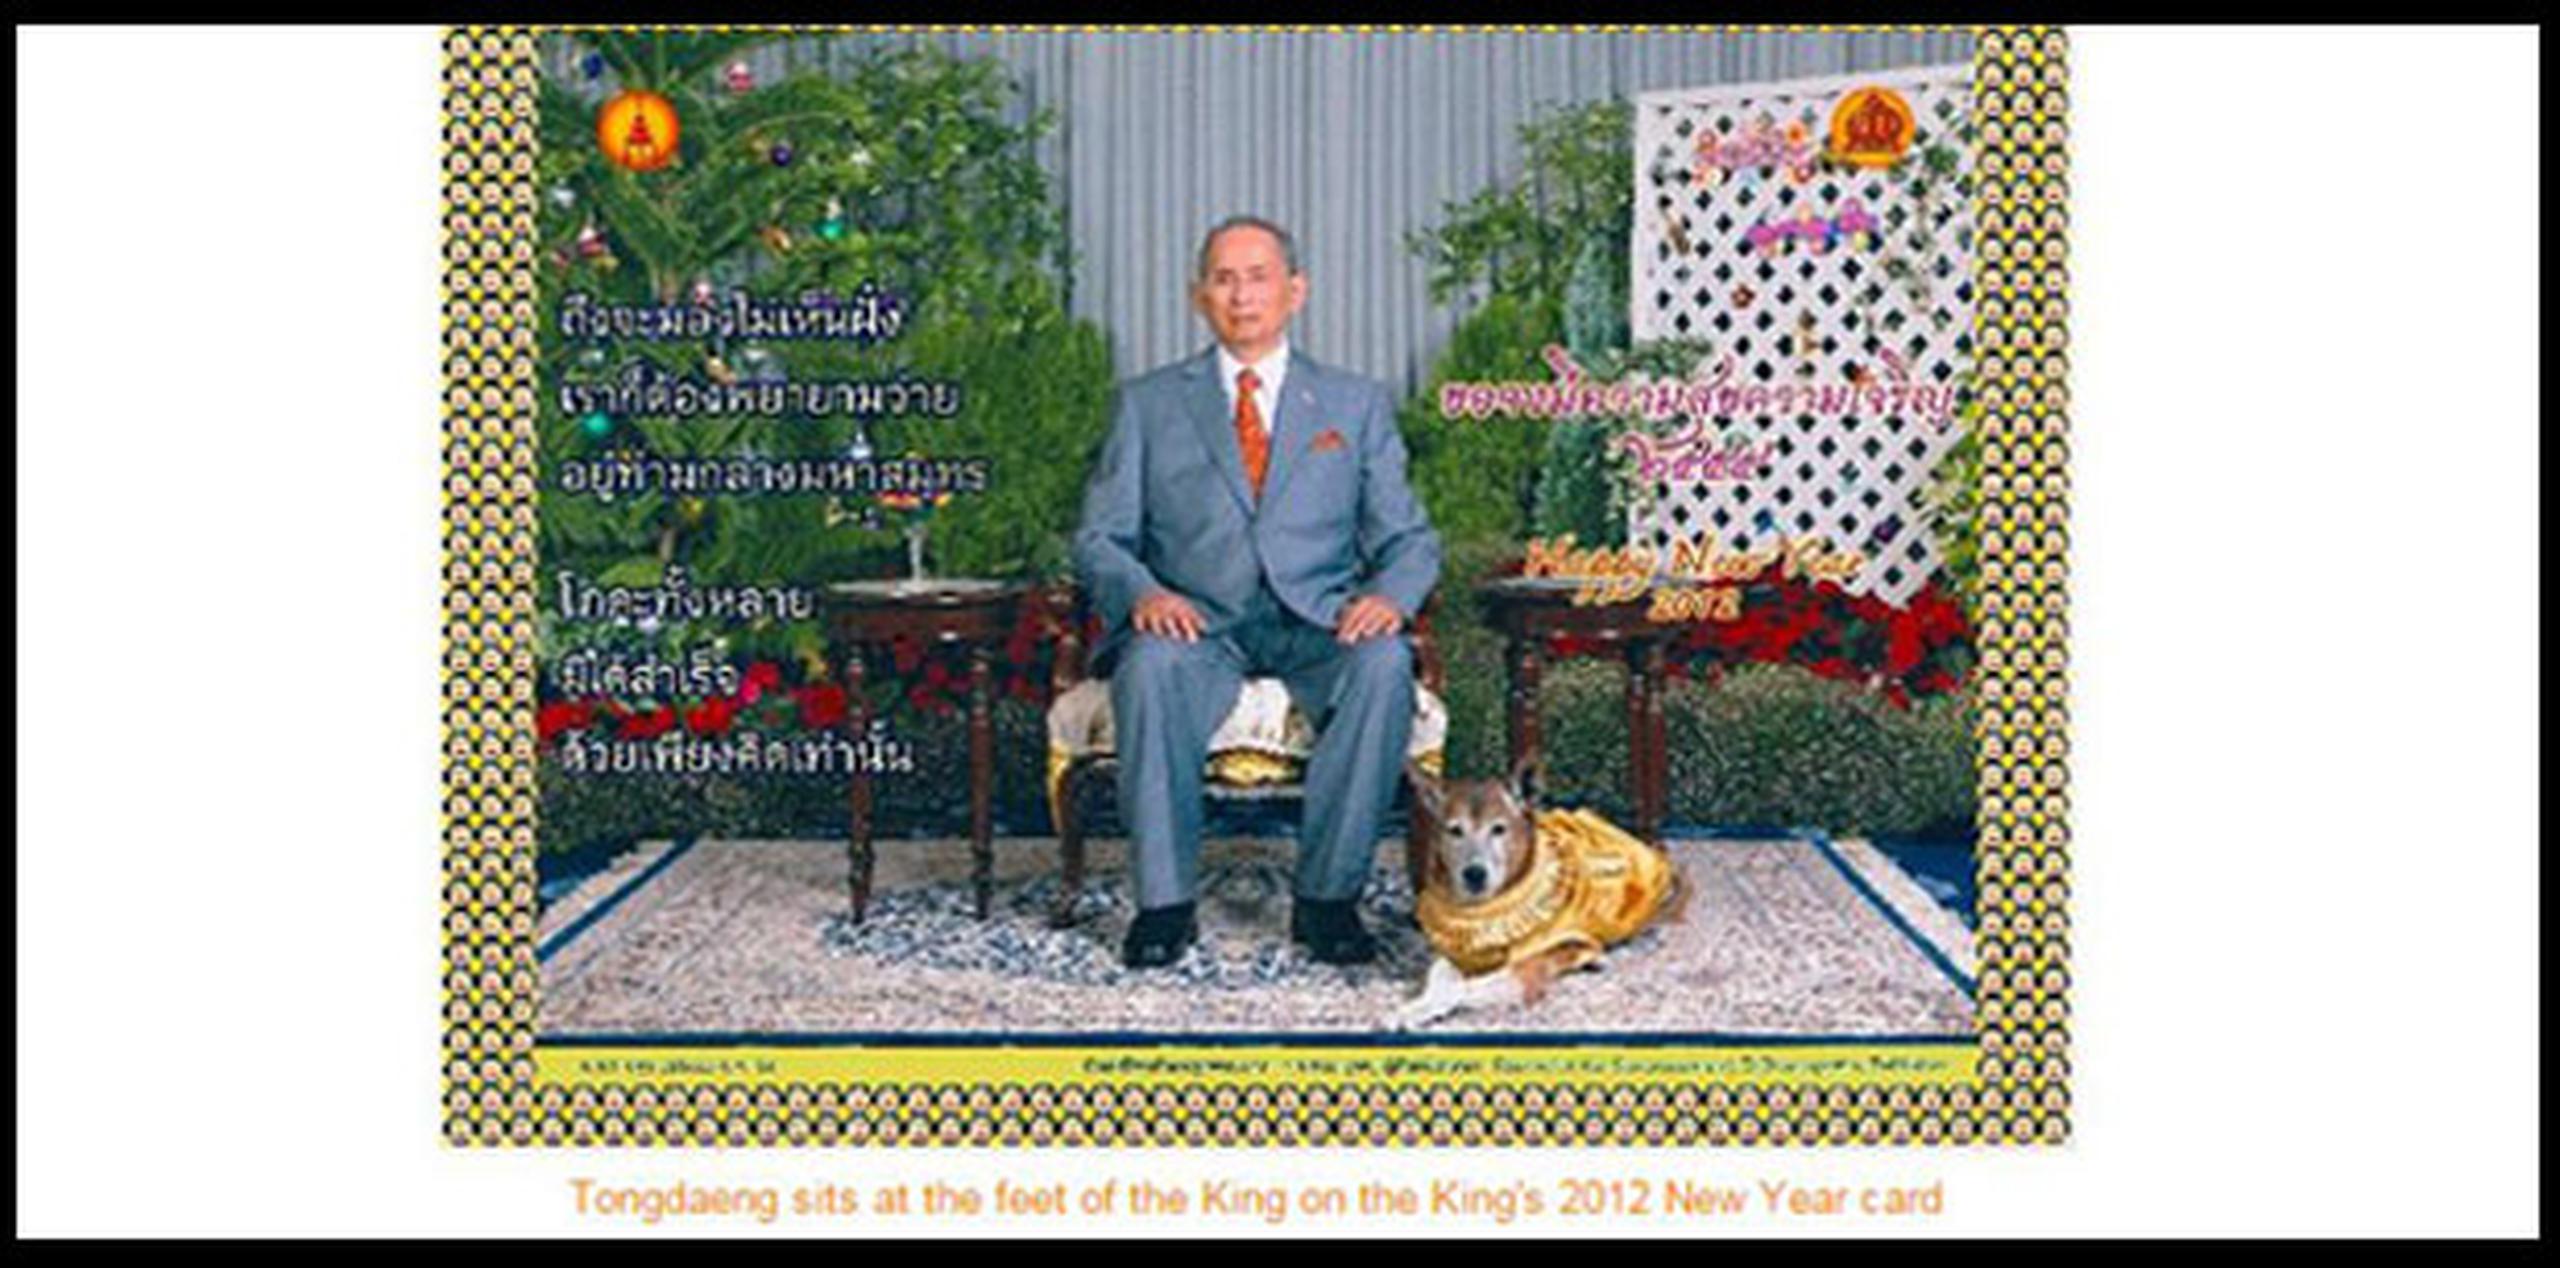 El monarca adoptó este perro callejero en 1998 y lo convirtió en su mascota favorita, a la que dedicó un libro, "La historia de Tongdaeng", publicado en 2002, en el que describe las buenas maneras del animal. (prachatai.com)